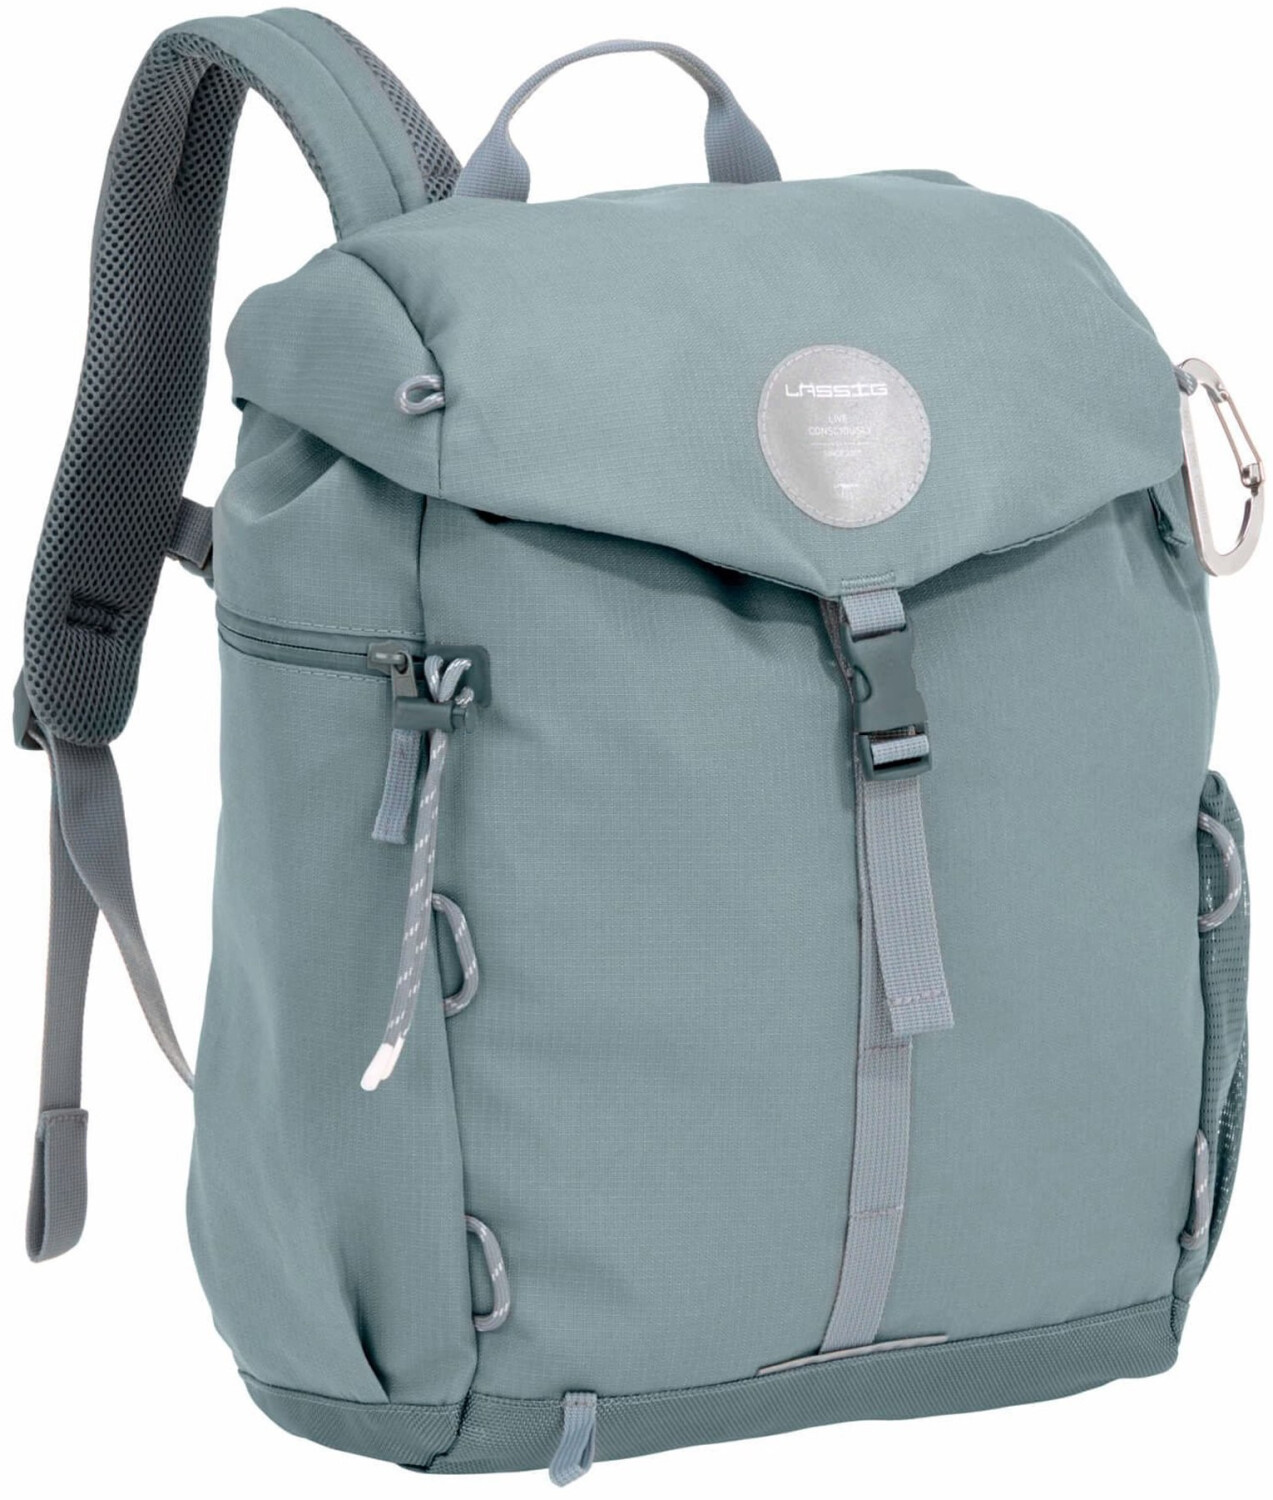 Lässig Green 76,99 ab Backpack Label | € Outdoor Preisvergleich bei